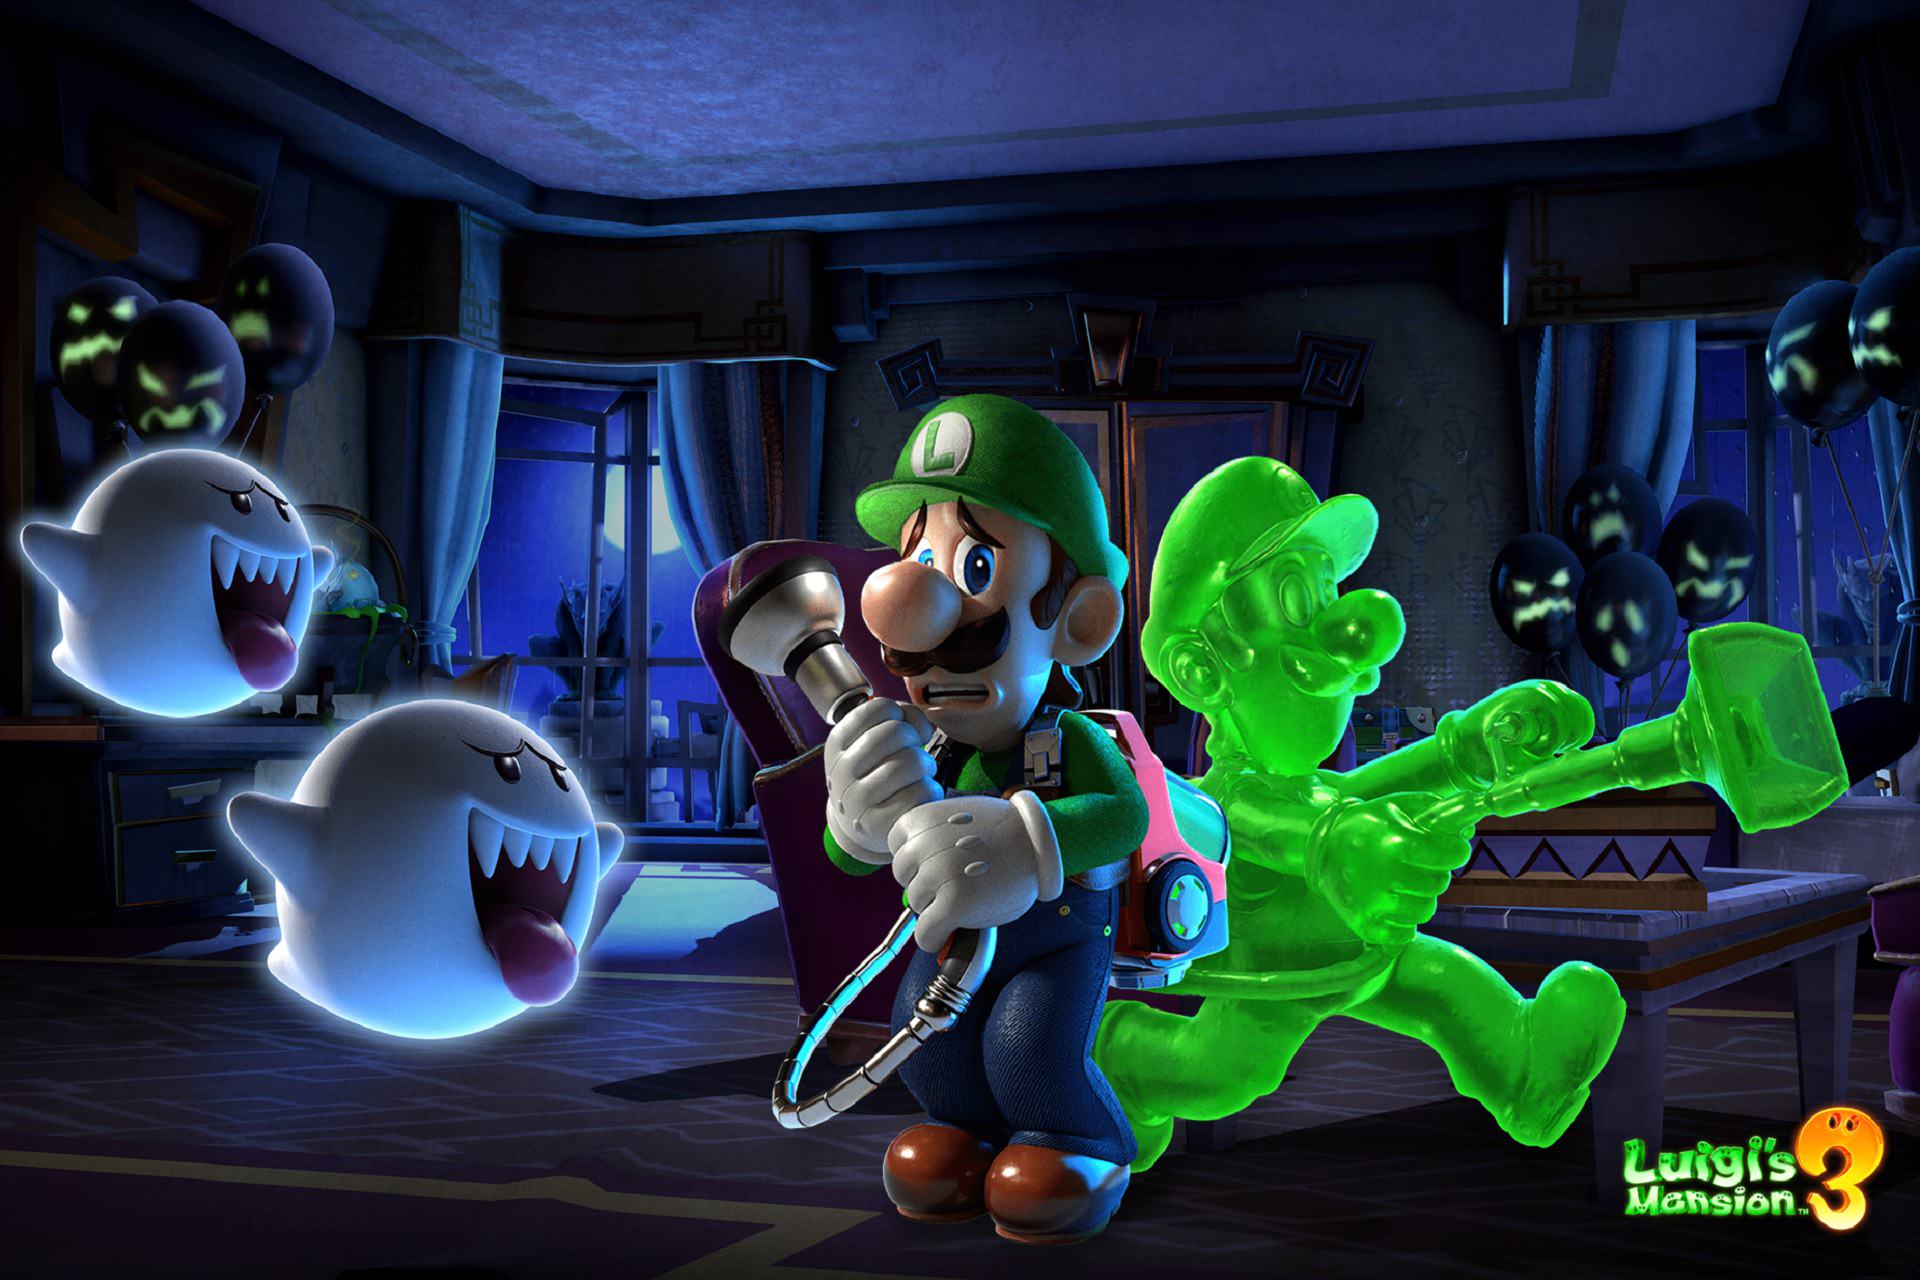 بررسی بازی Luigi's Mansion 3